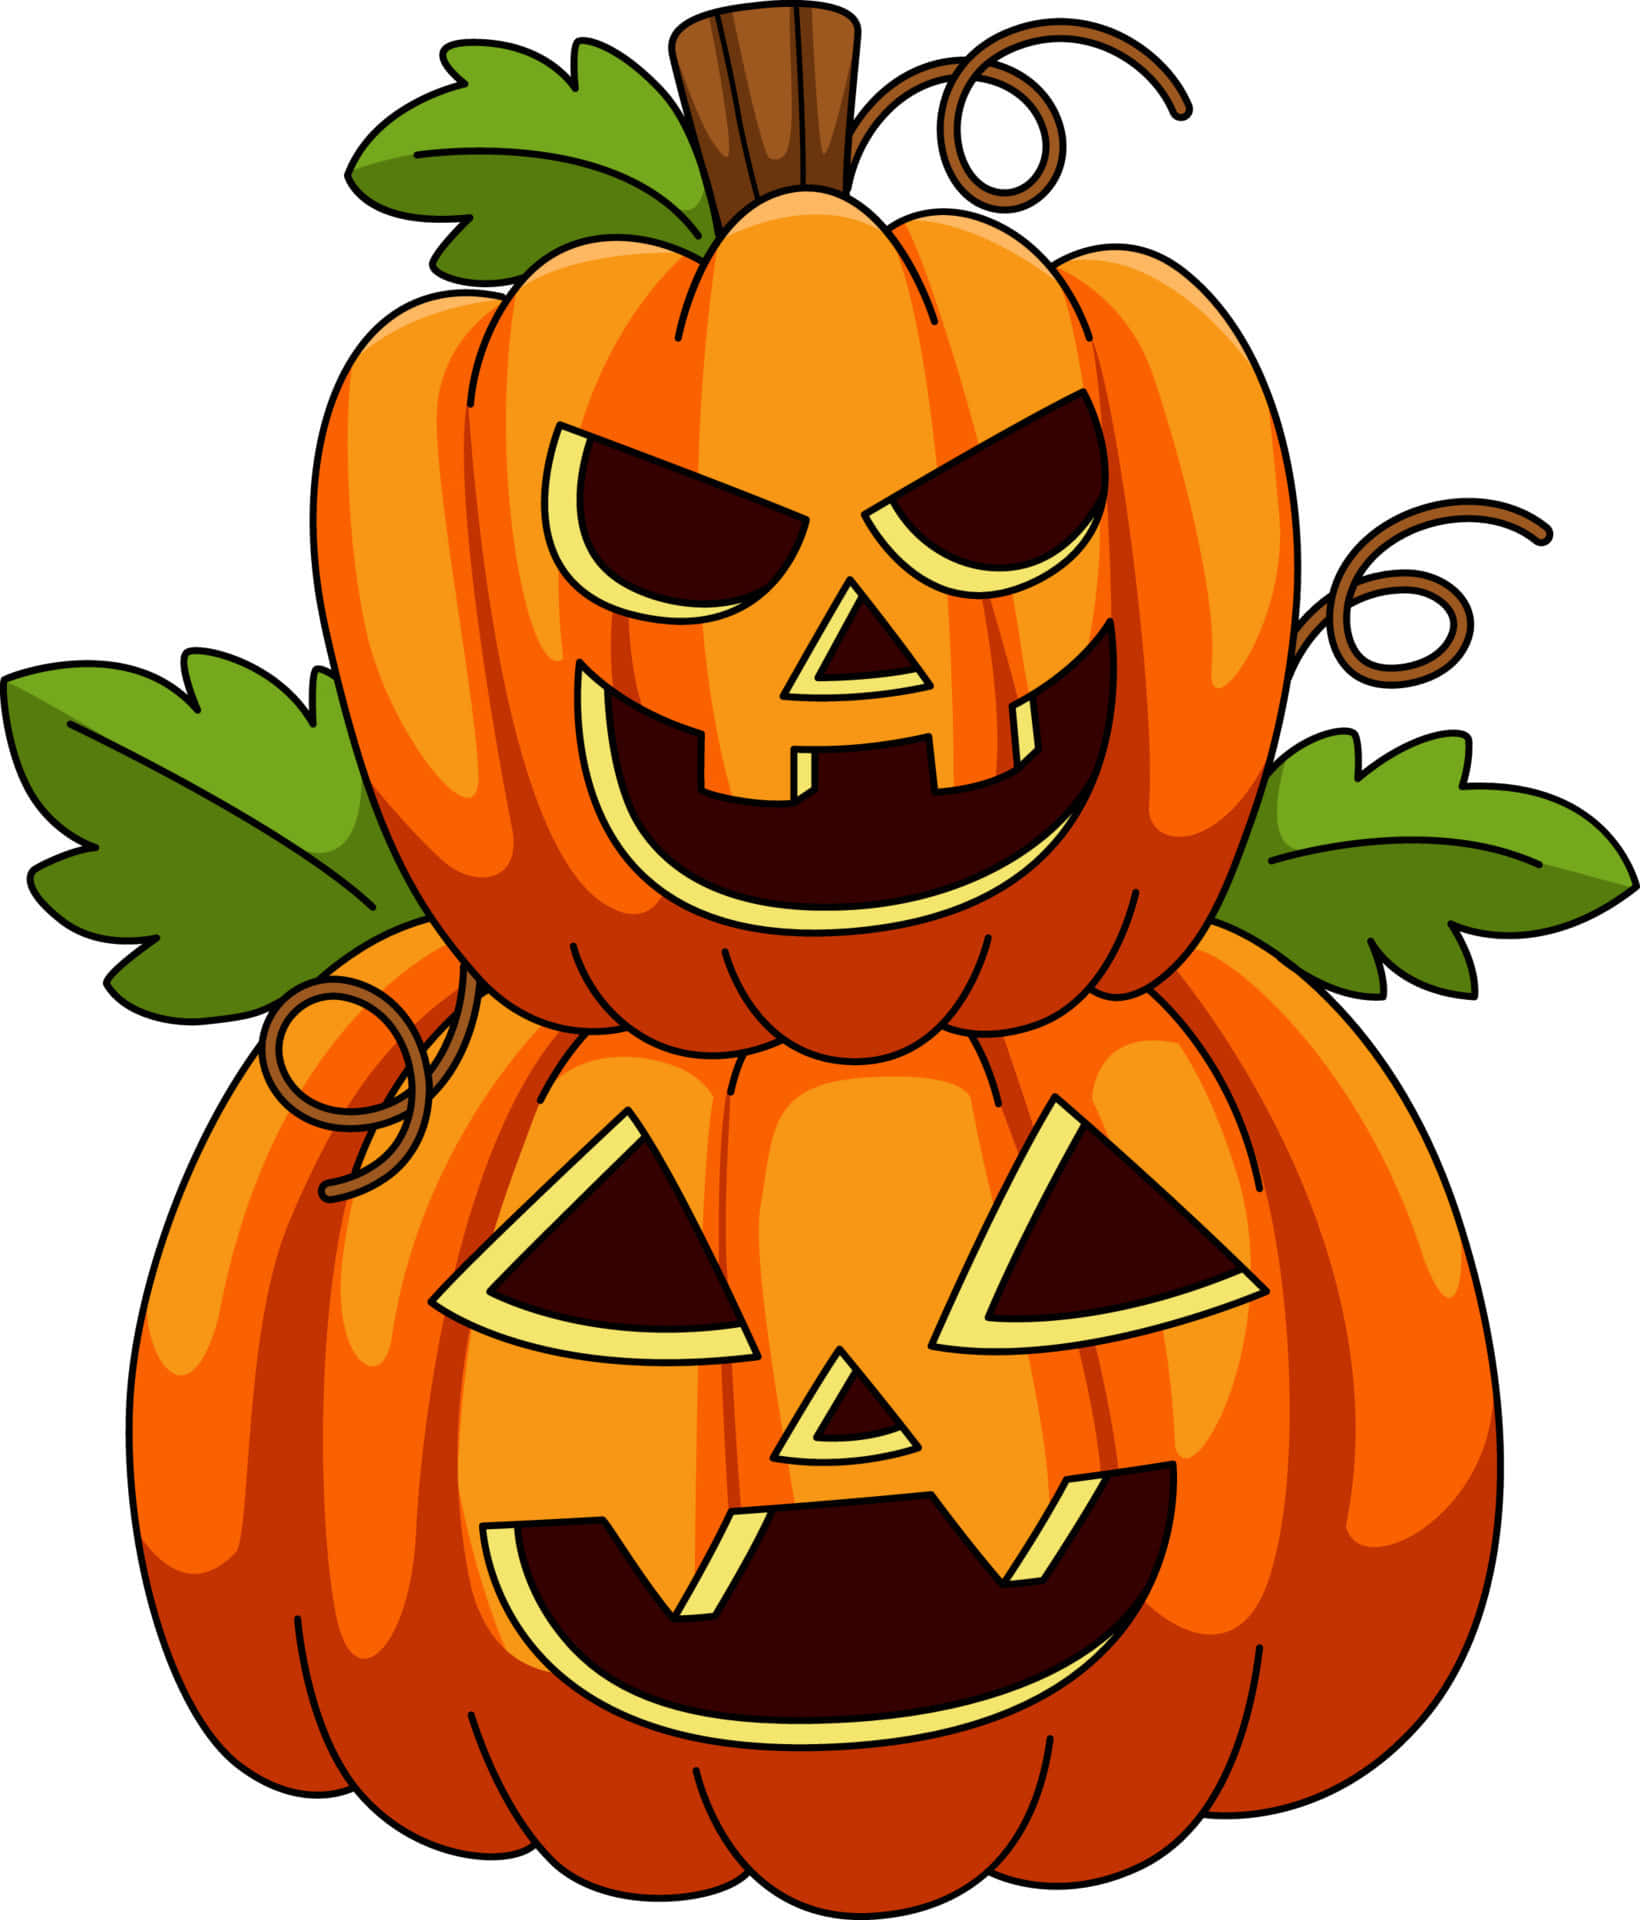 Imagensde Desenhos Animados De Halloween